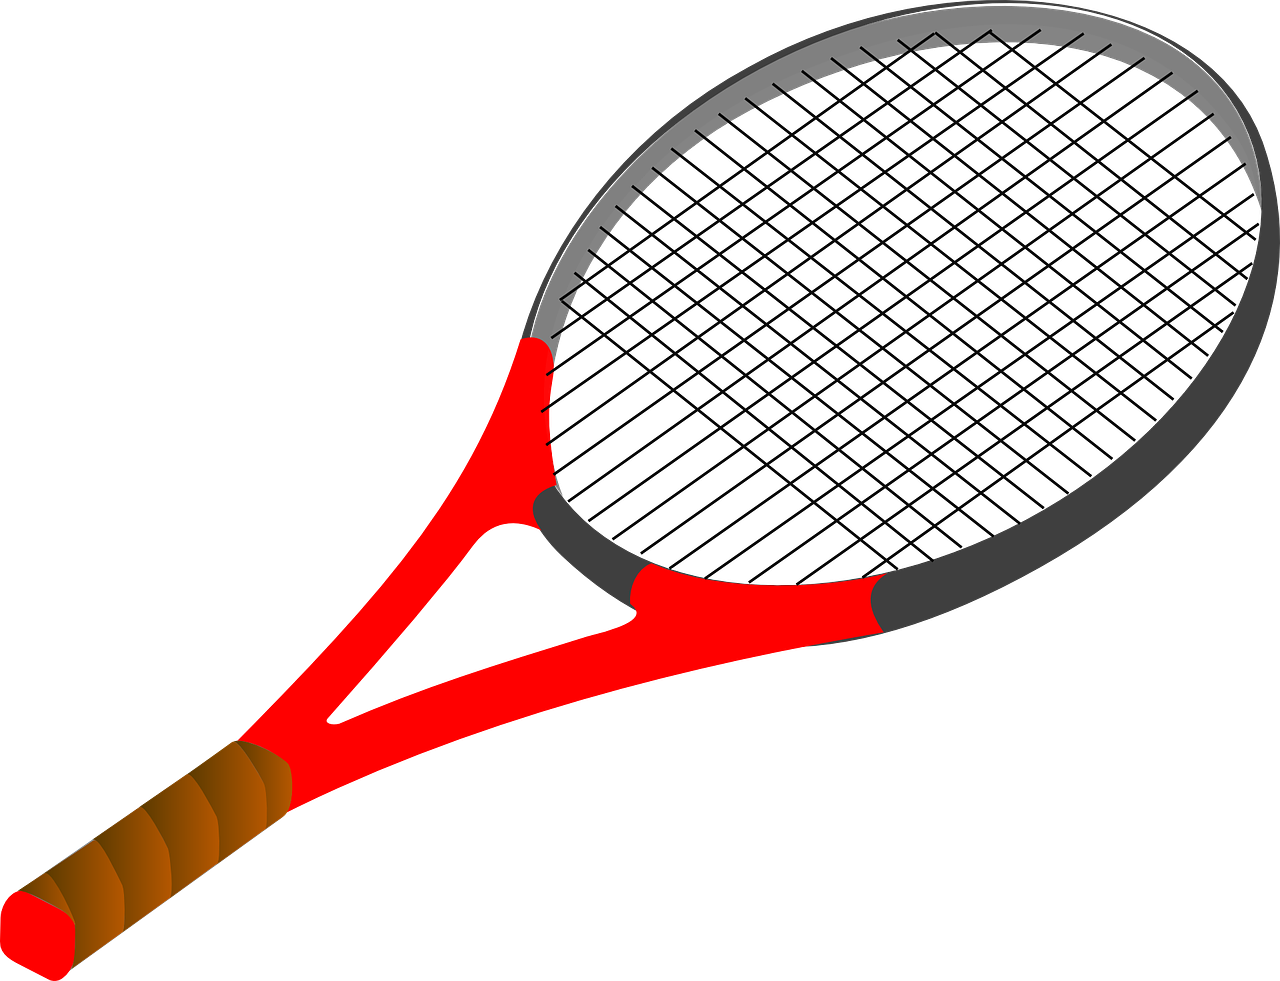 ¿Qué es el Racket deporte?